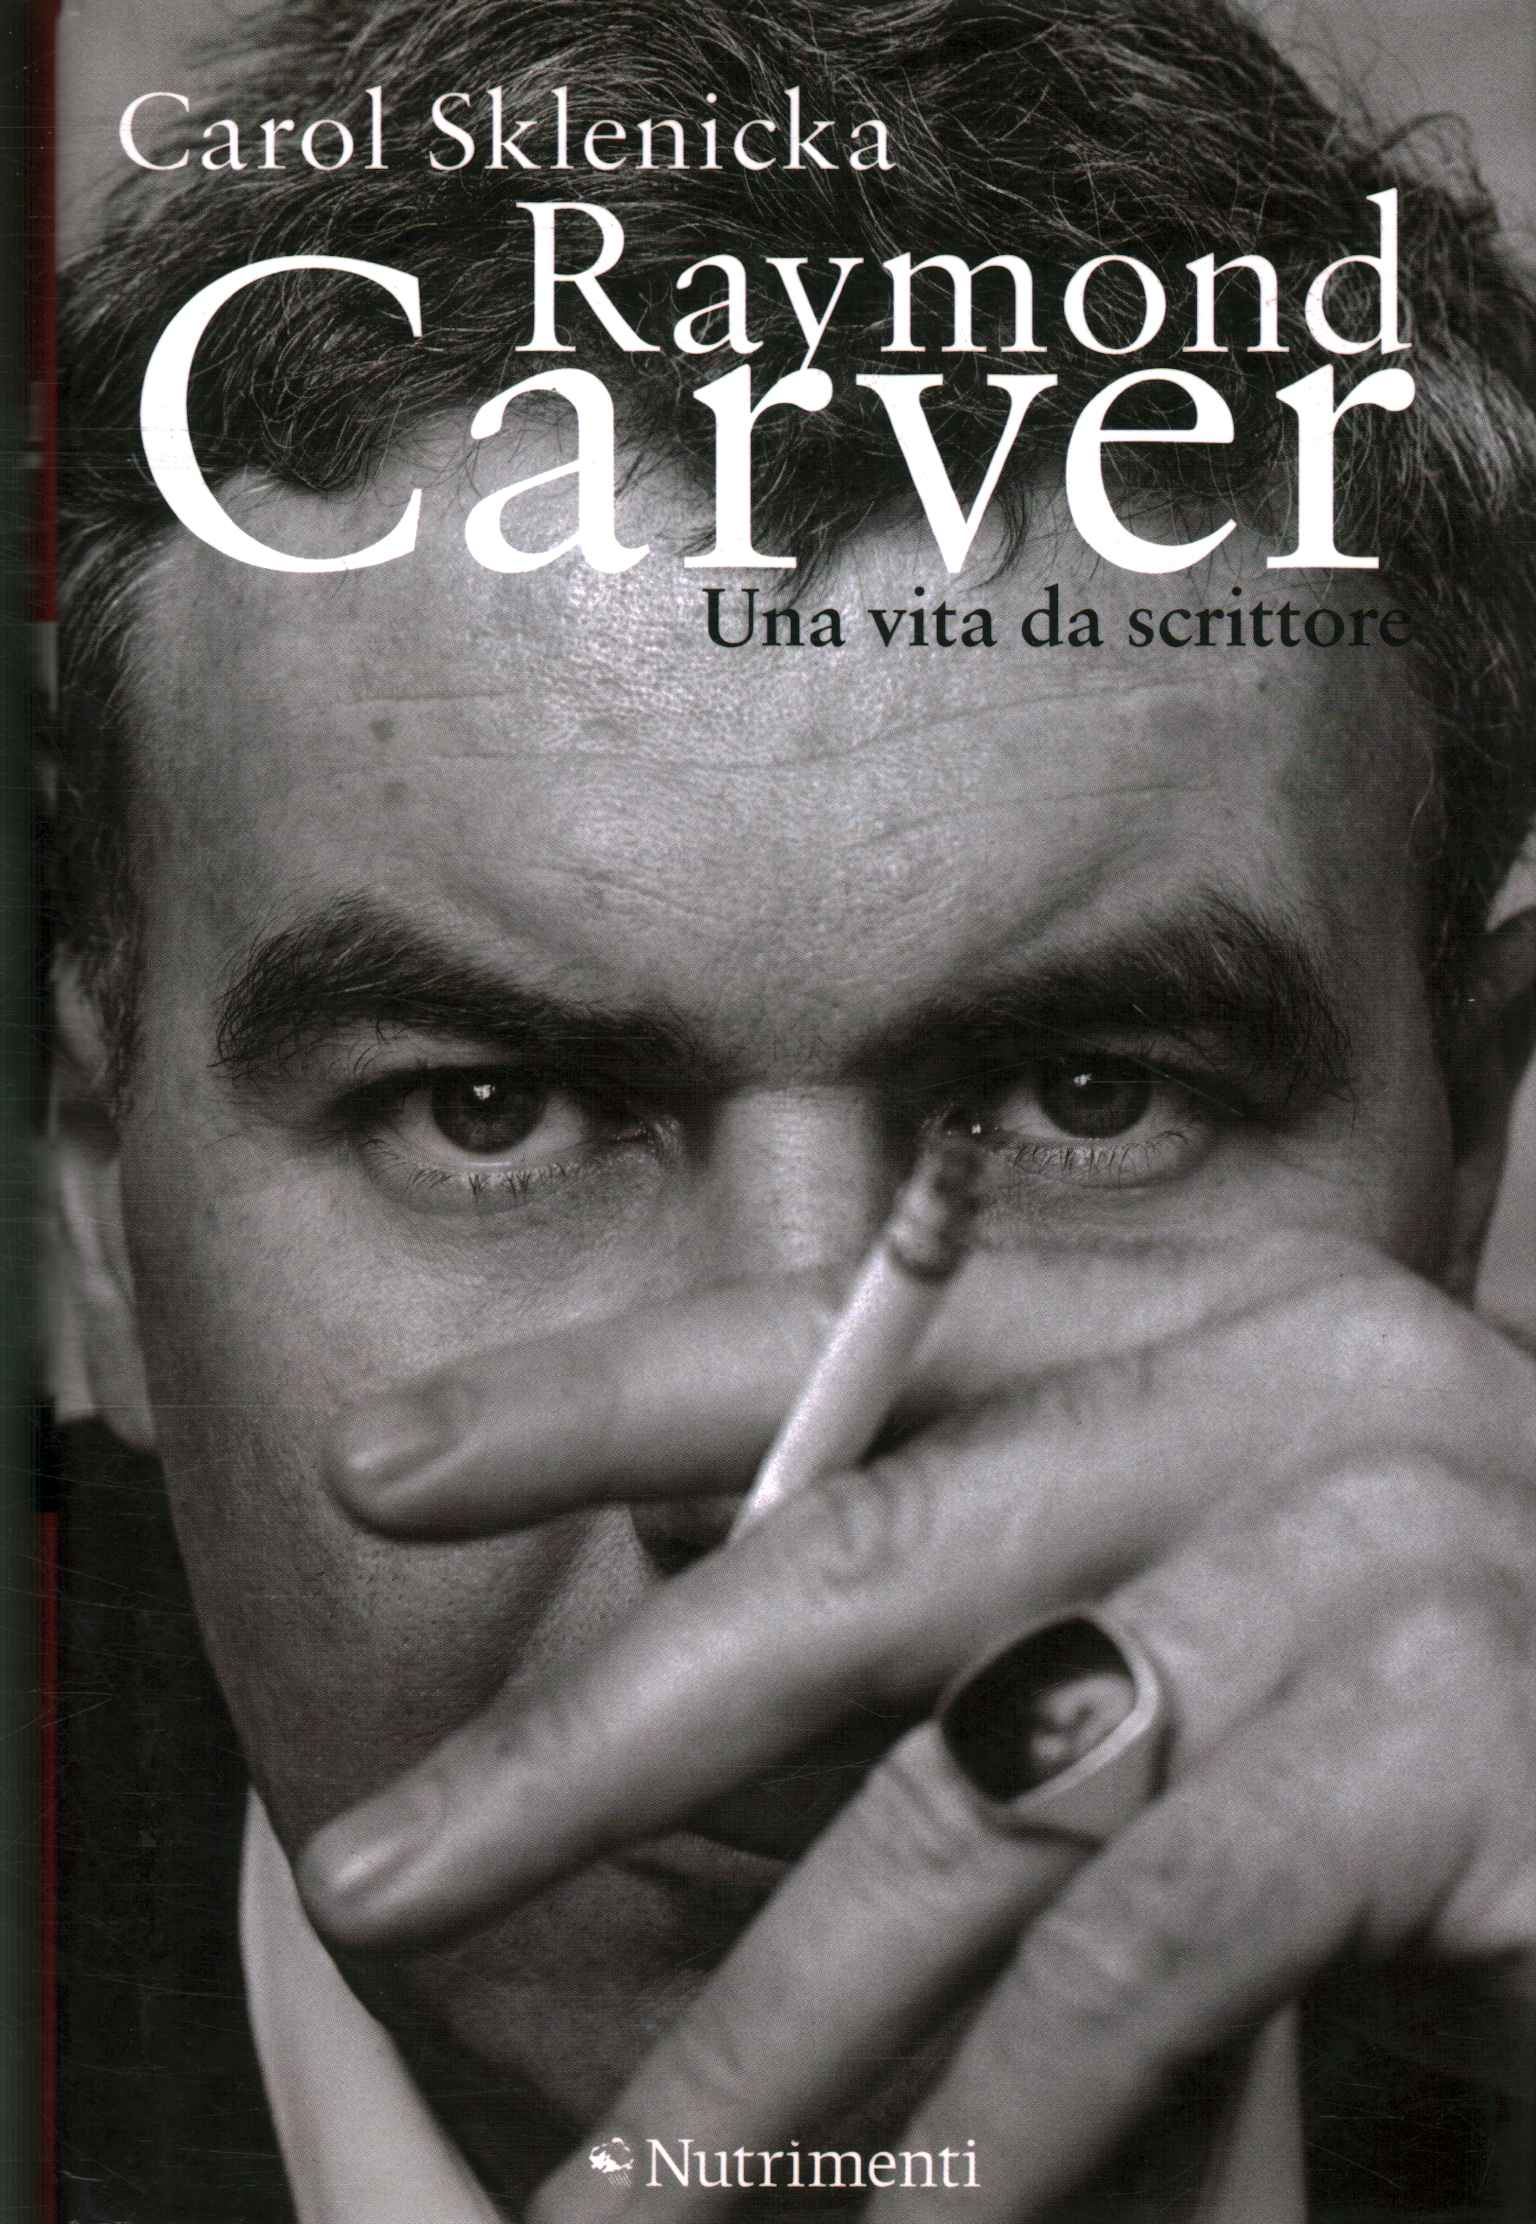 Raymond Carver. Une vie d'écrivain